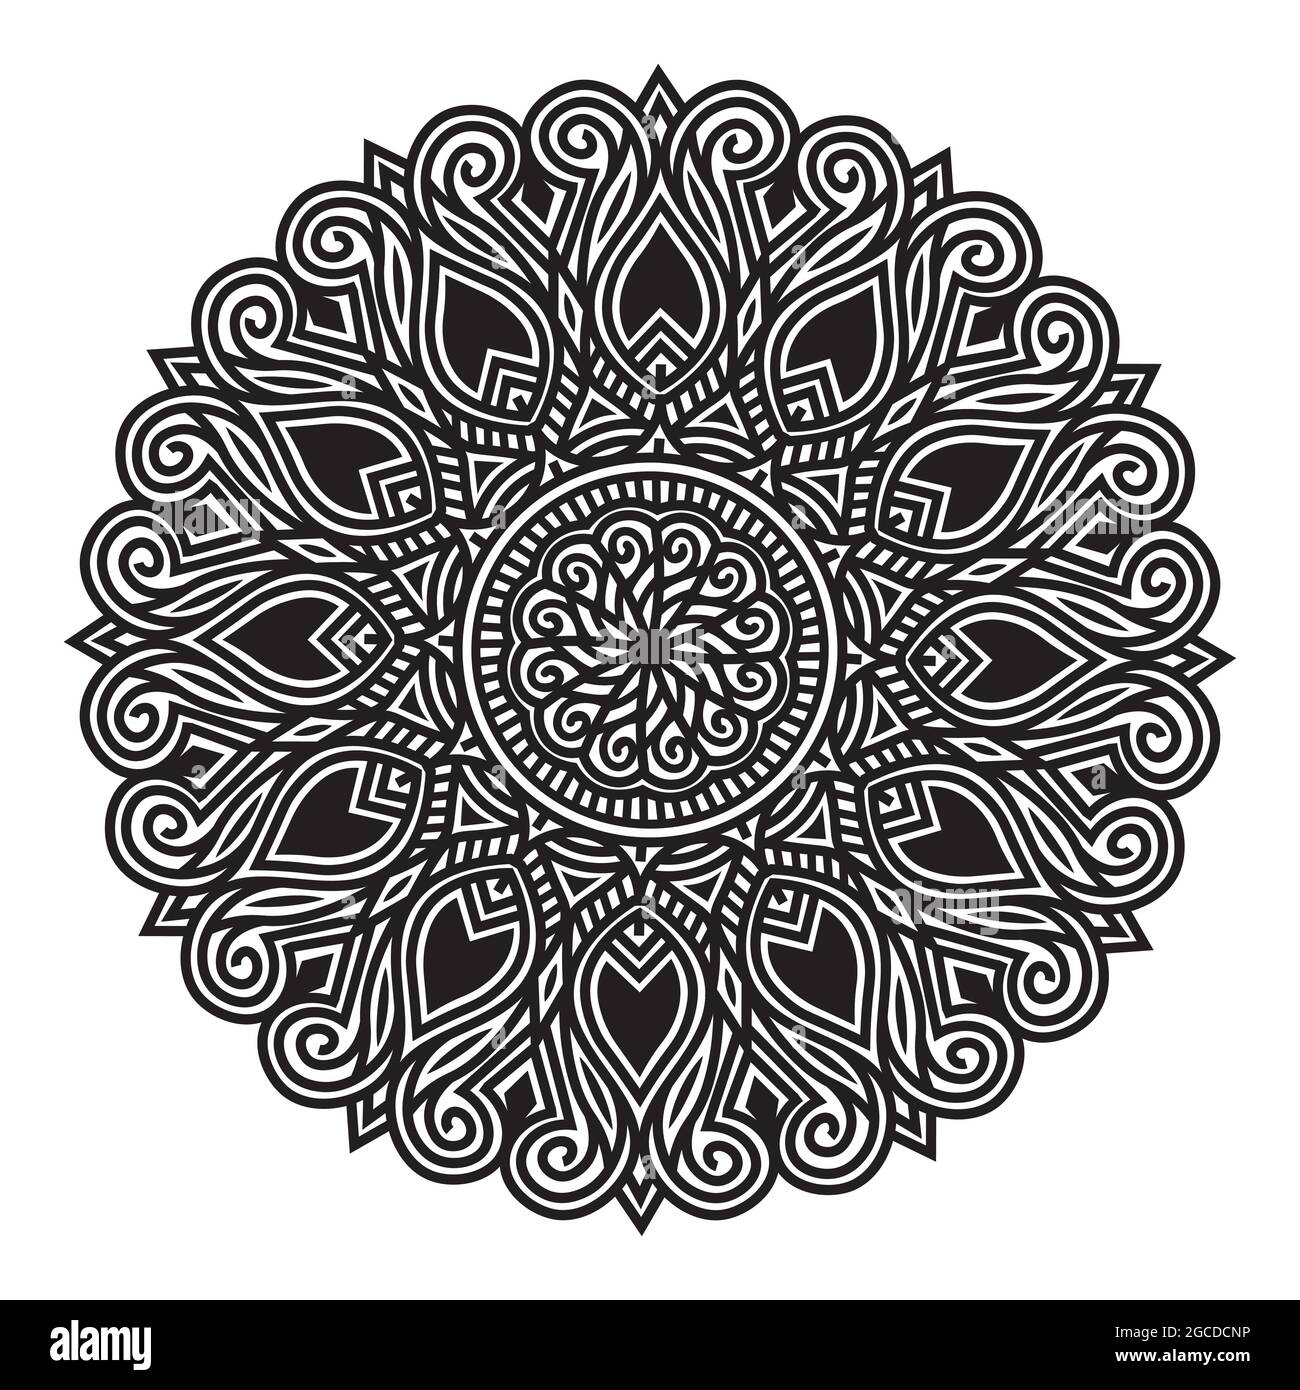 Silhouette Harmonie Mandala-Design mit runden Tribal-Motiv und arabischen Stil Muster Linie Kunst Stock Vektor